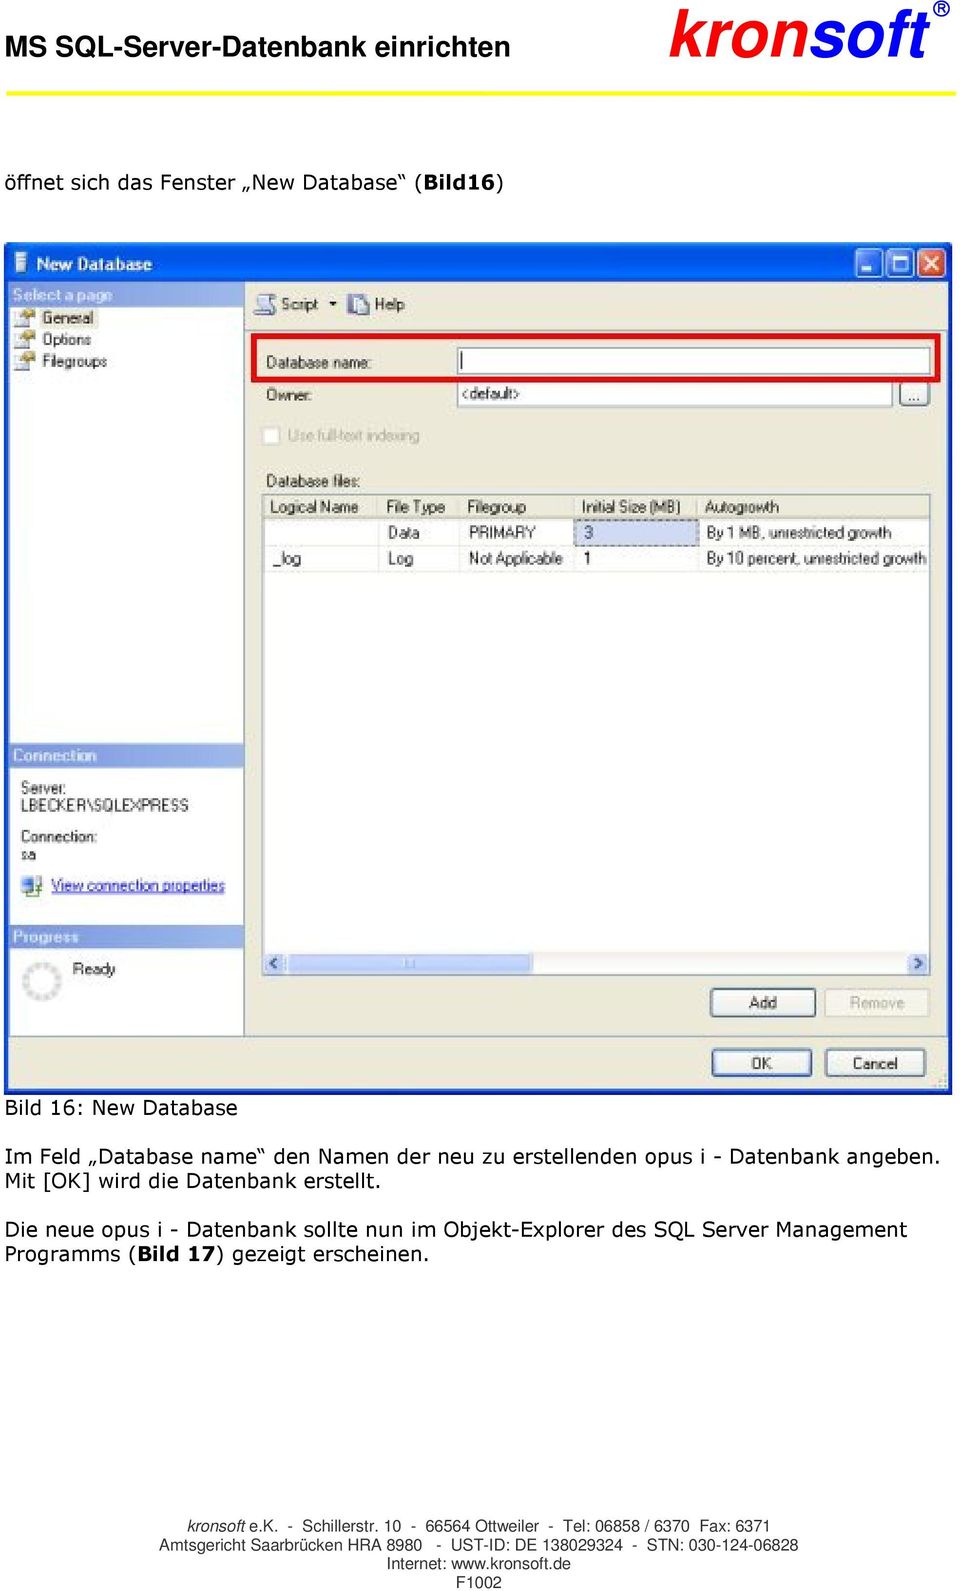 Die neue opus i - Datenbank sollte nun im Objekt-Explorer des SQL Server Management Programms